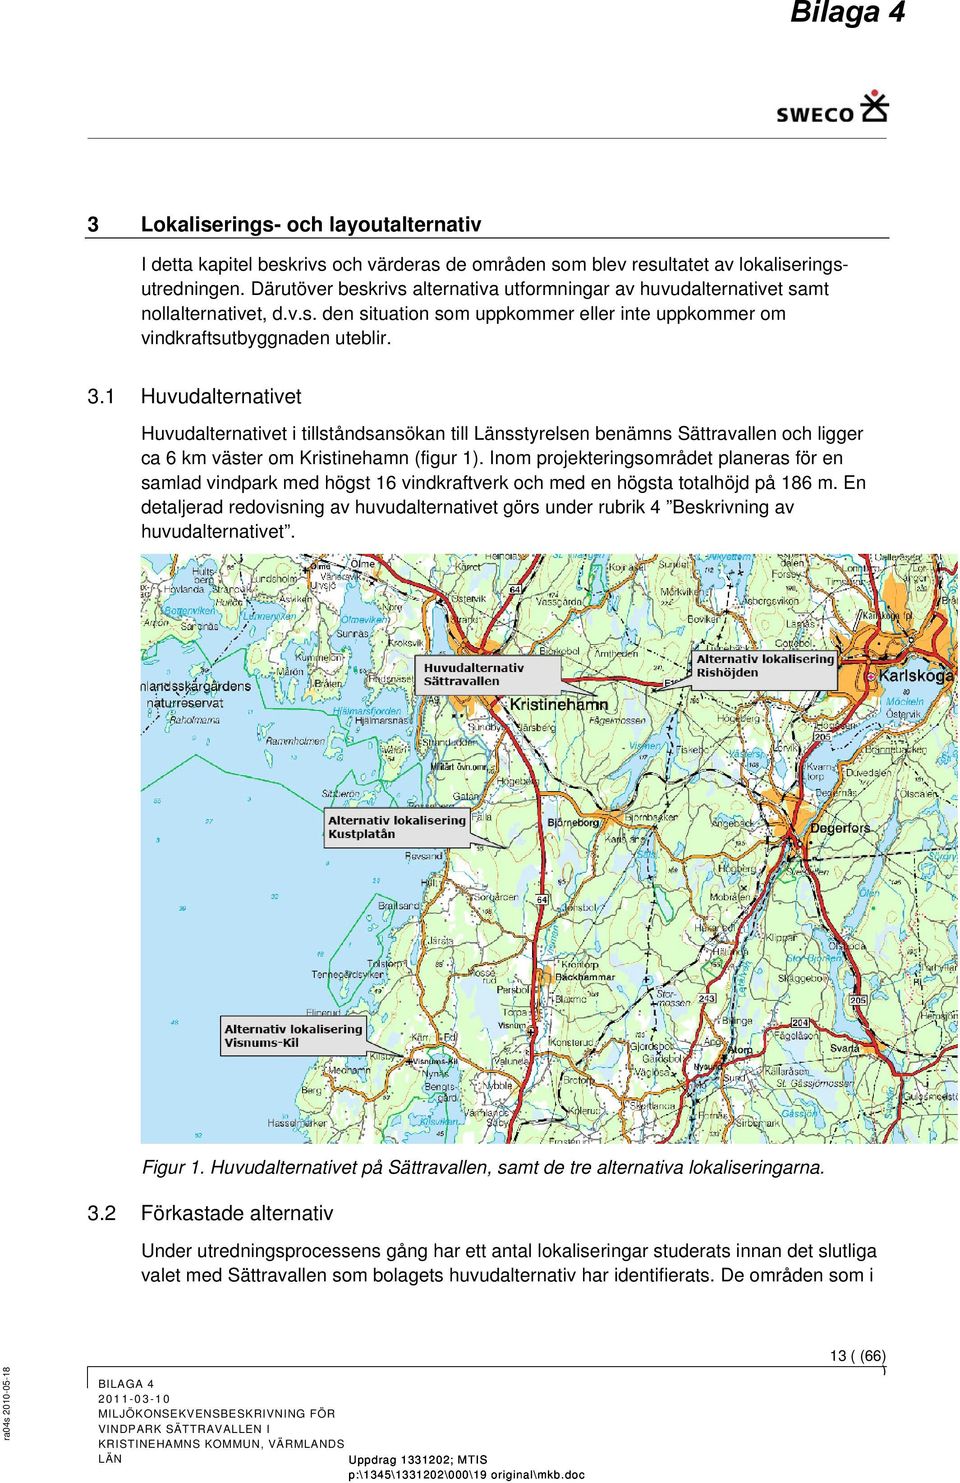 1 Huvudalternativet Huvudalternativet i tillståndsansökan till Länsstyrelsen benämns Sättravallen och ligger ca 6 km väster om Kristinehamn (figur 1.